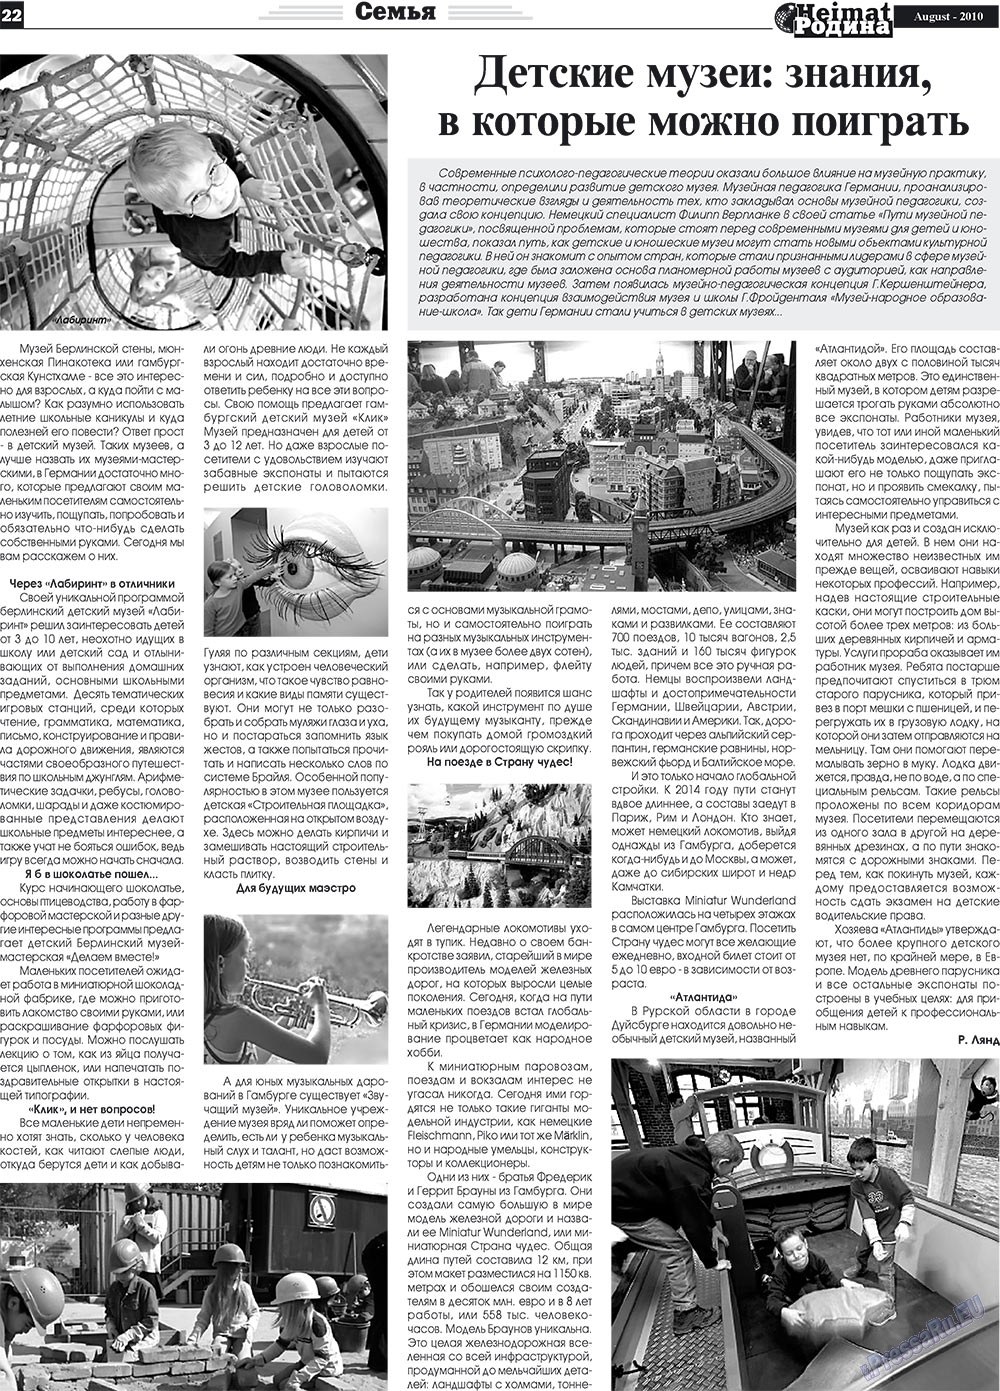 Heimat-Родина (газета). 2010 год, номер 8, стр. 22